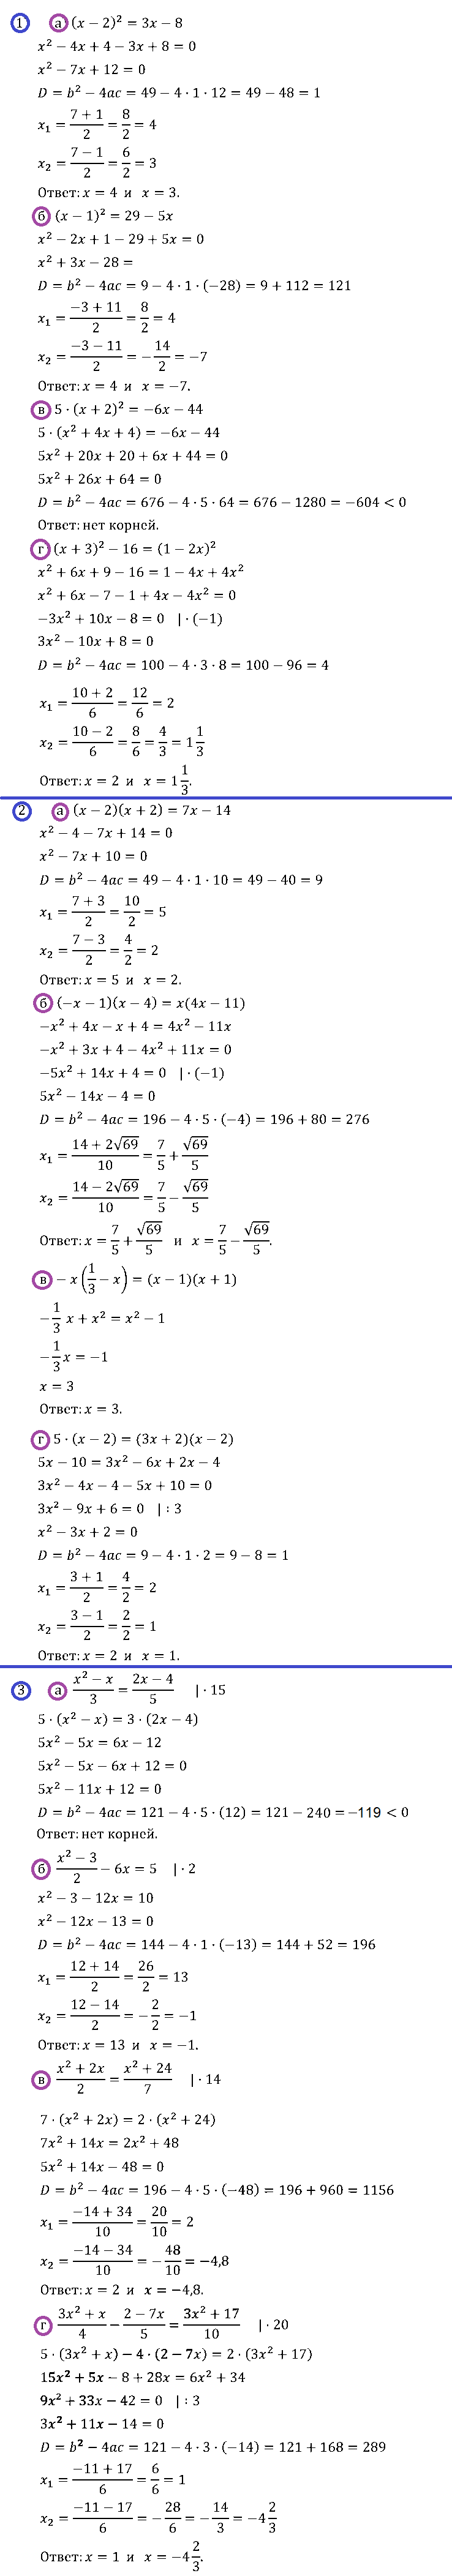 Алгебра 8 Макарычев Самостоятельная С-26